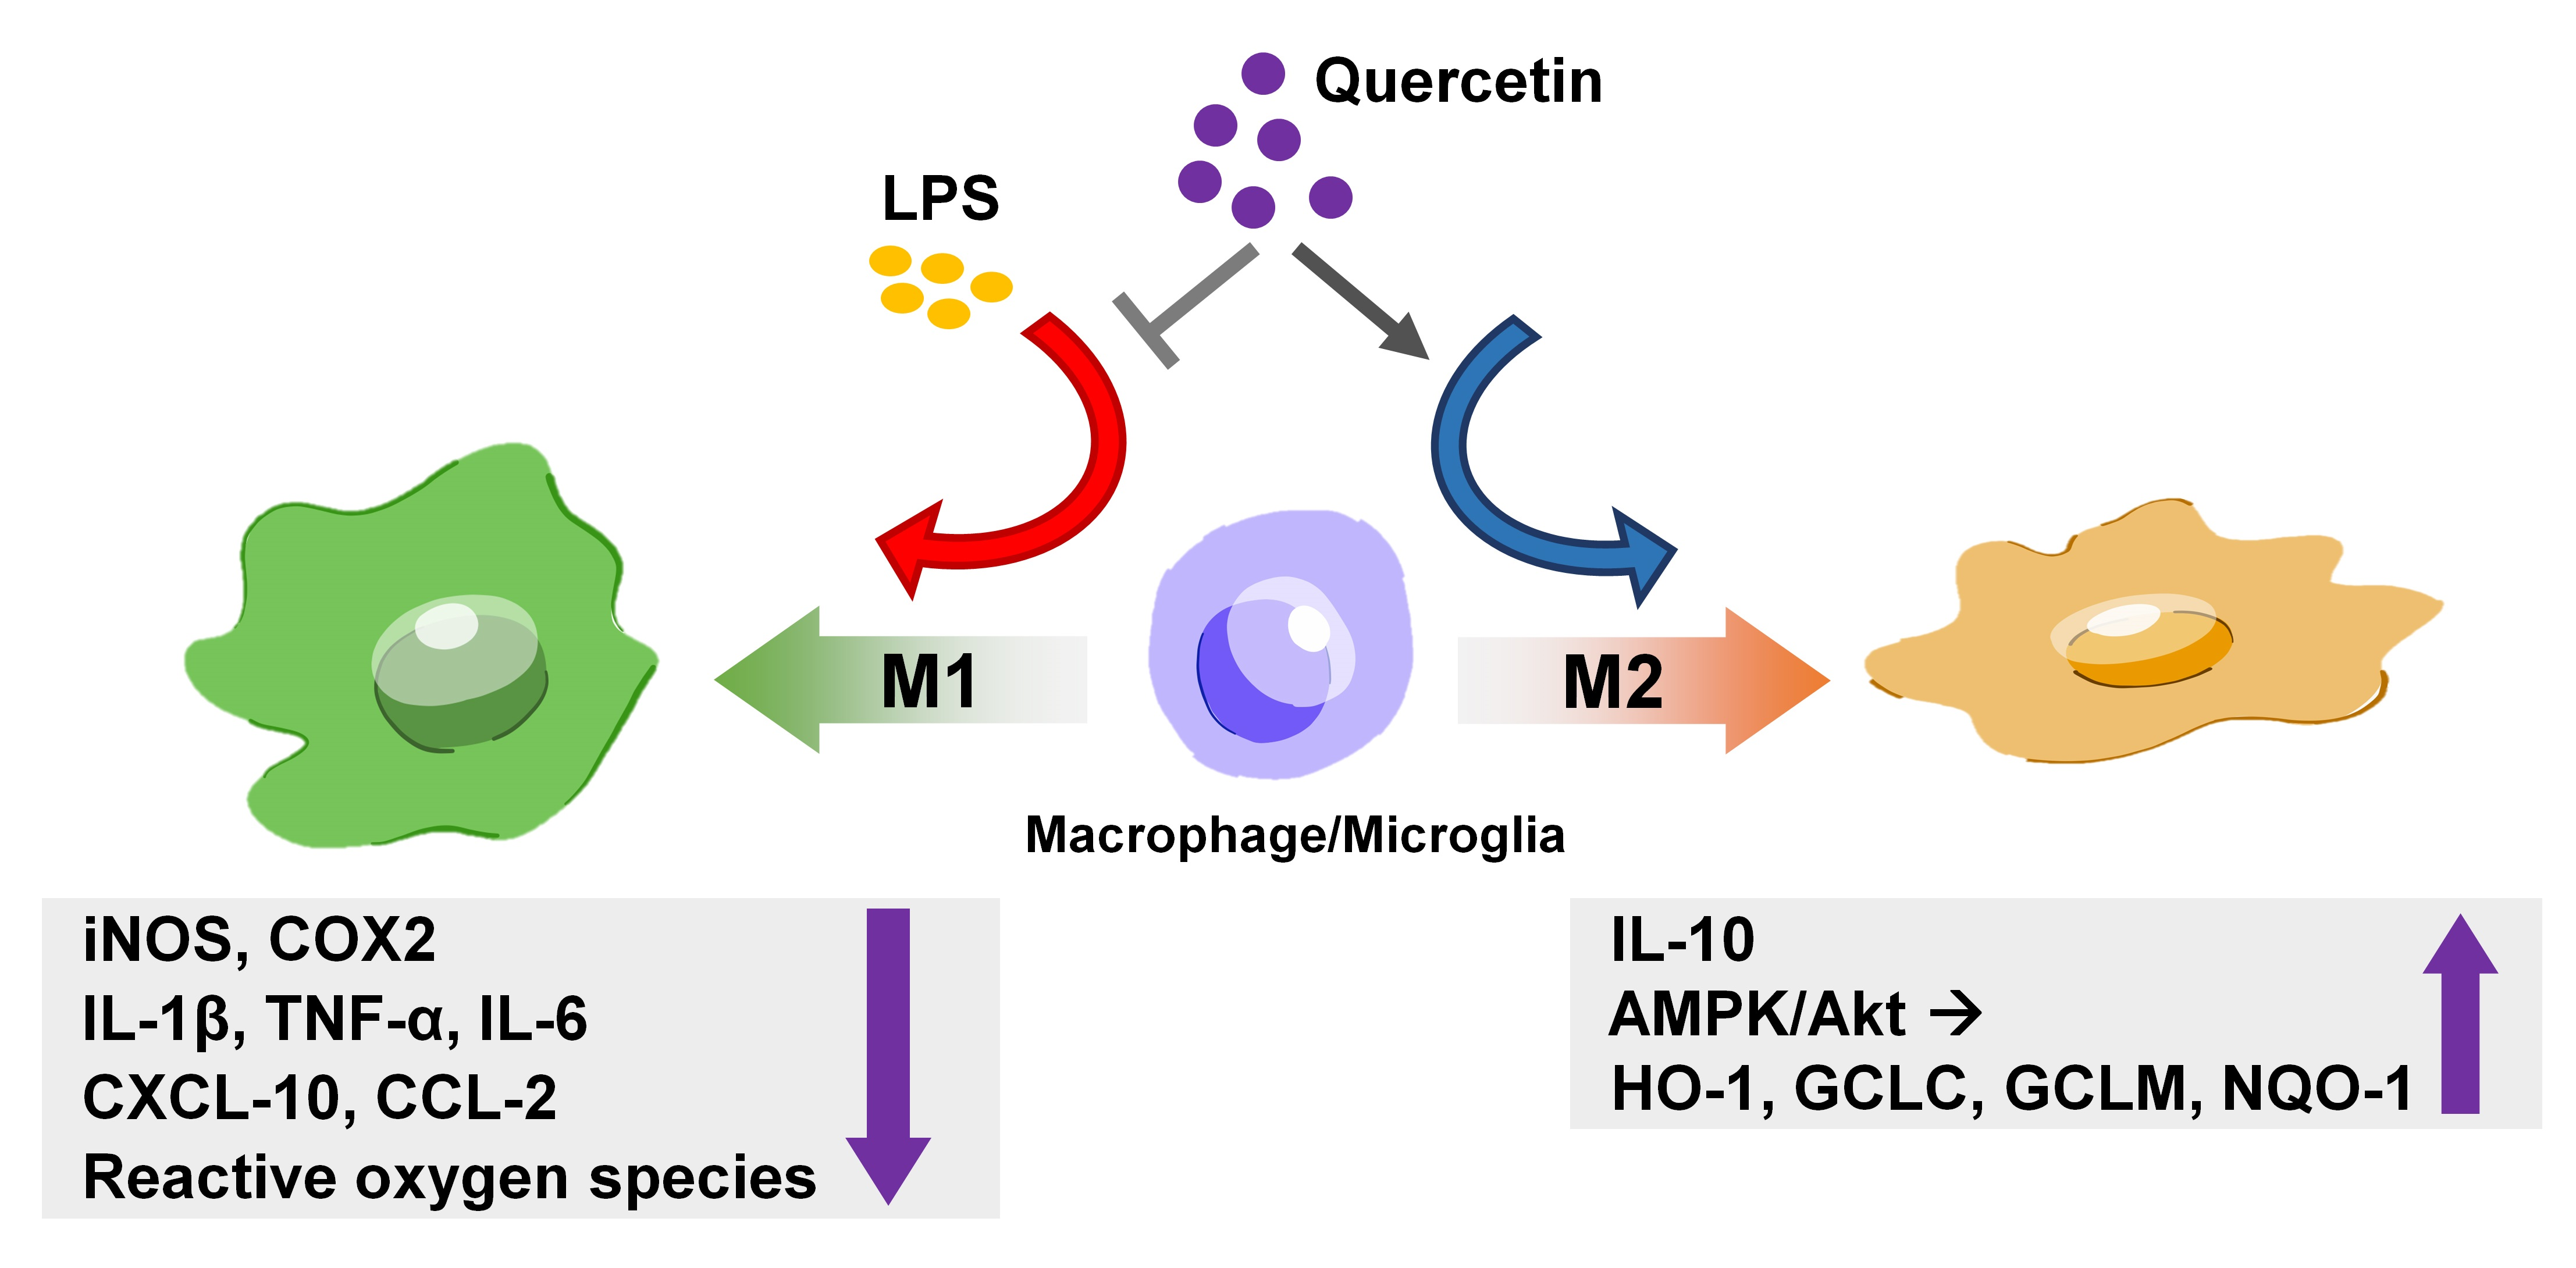 macrophage activation m1 m2